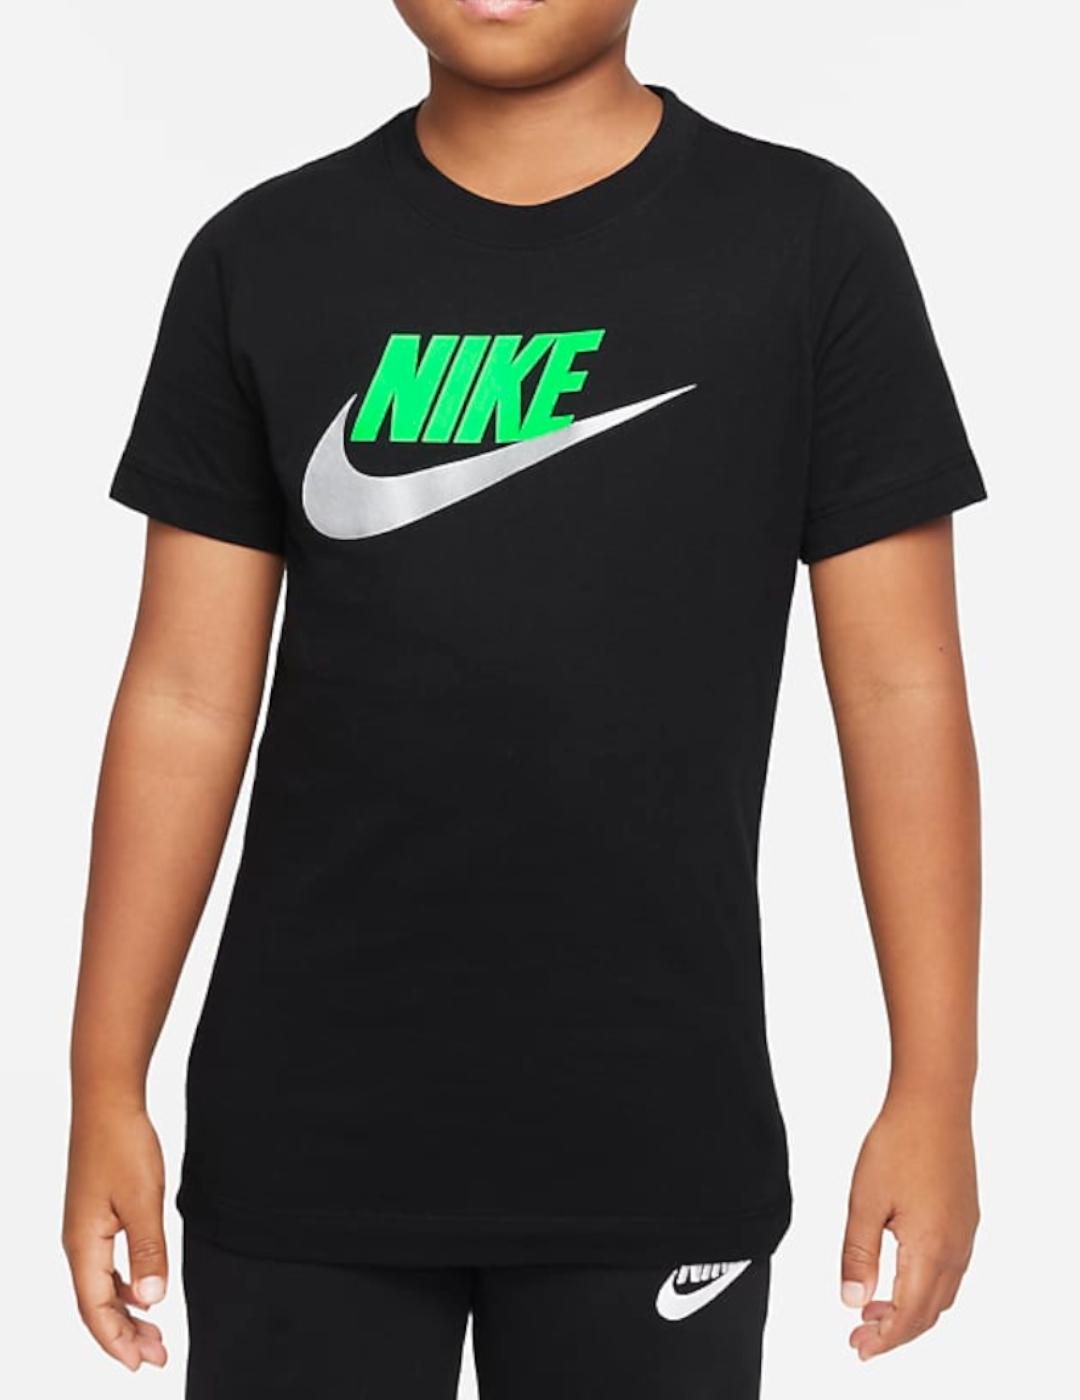 NIKE - Camiseta negra AR5252 013 Niño